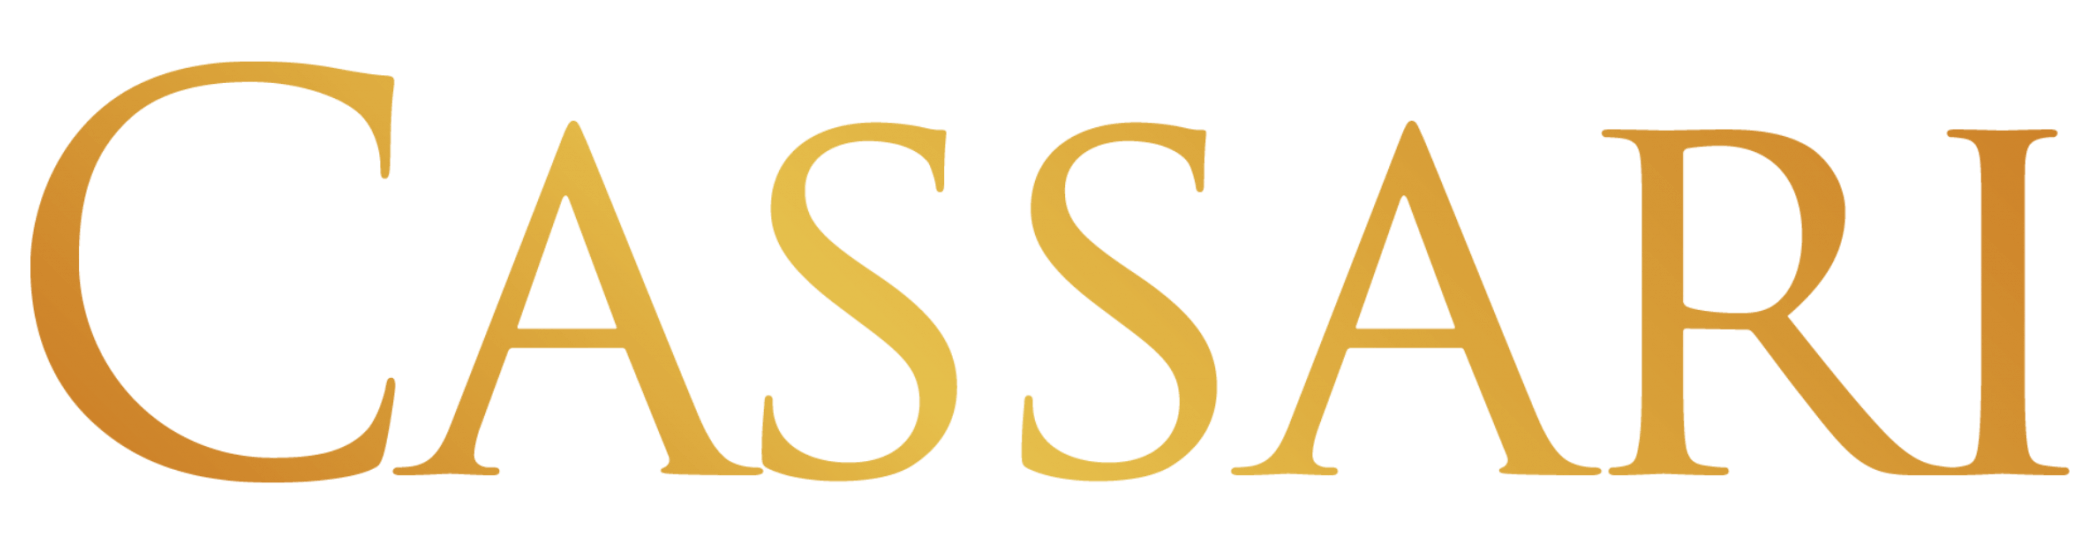 Cassari logo